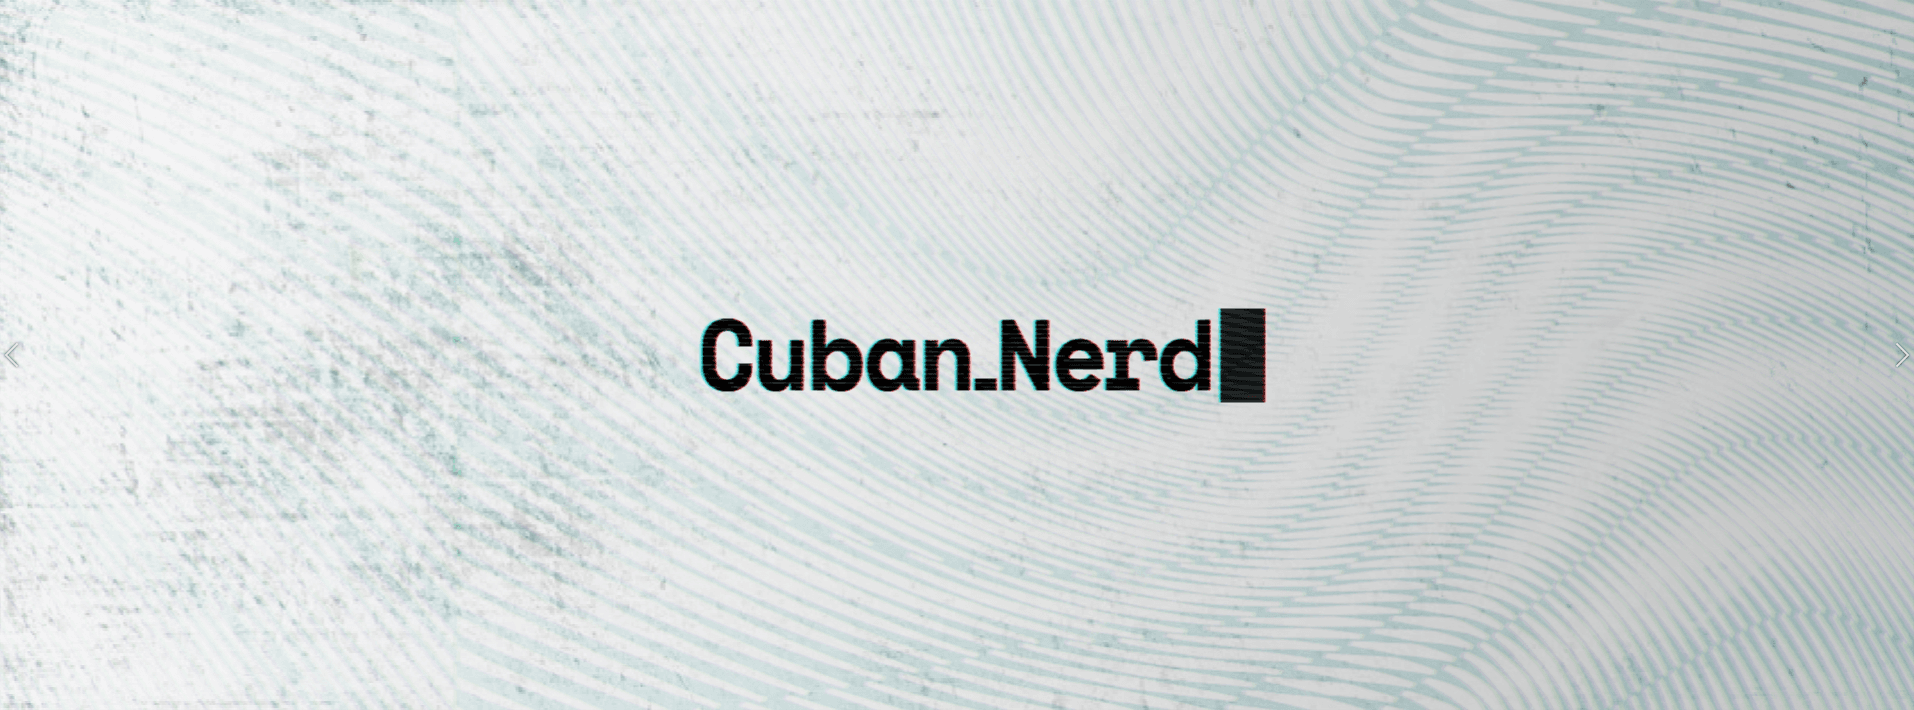 cubannerd banner